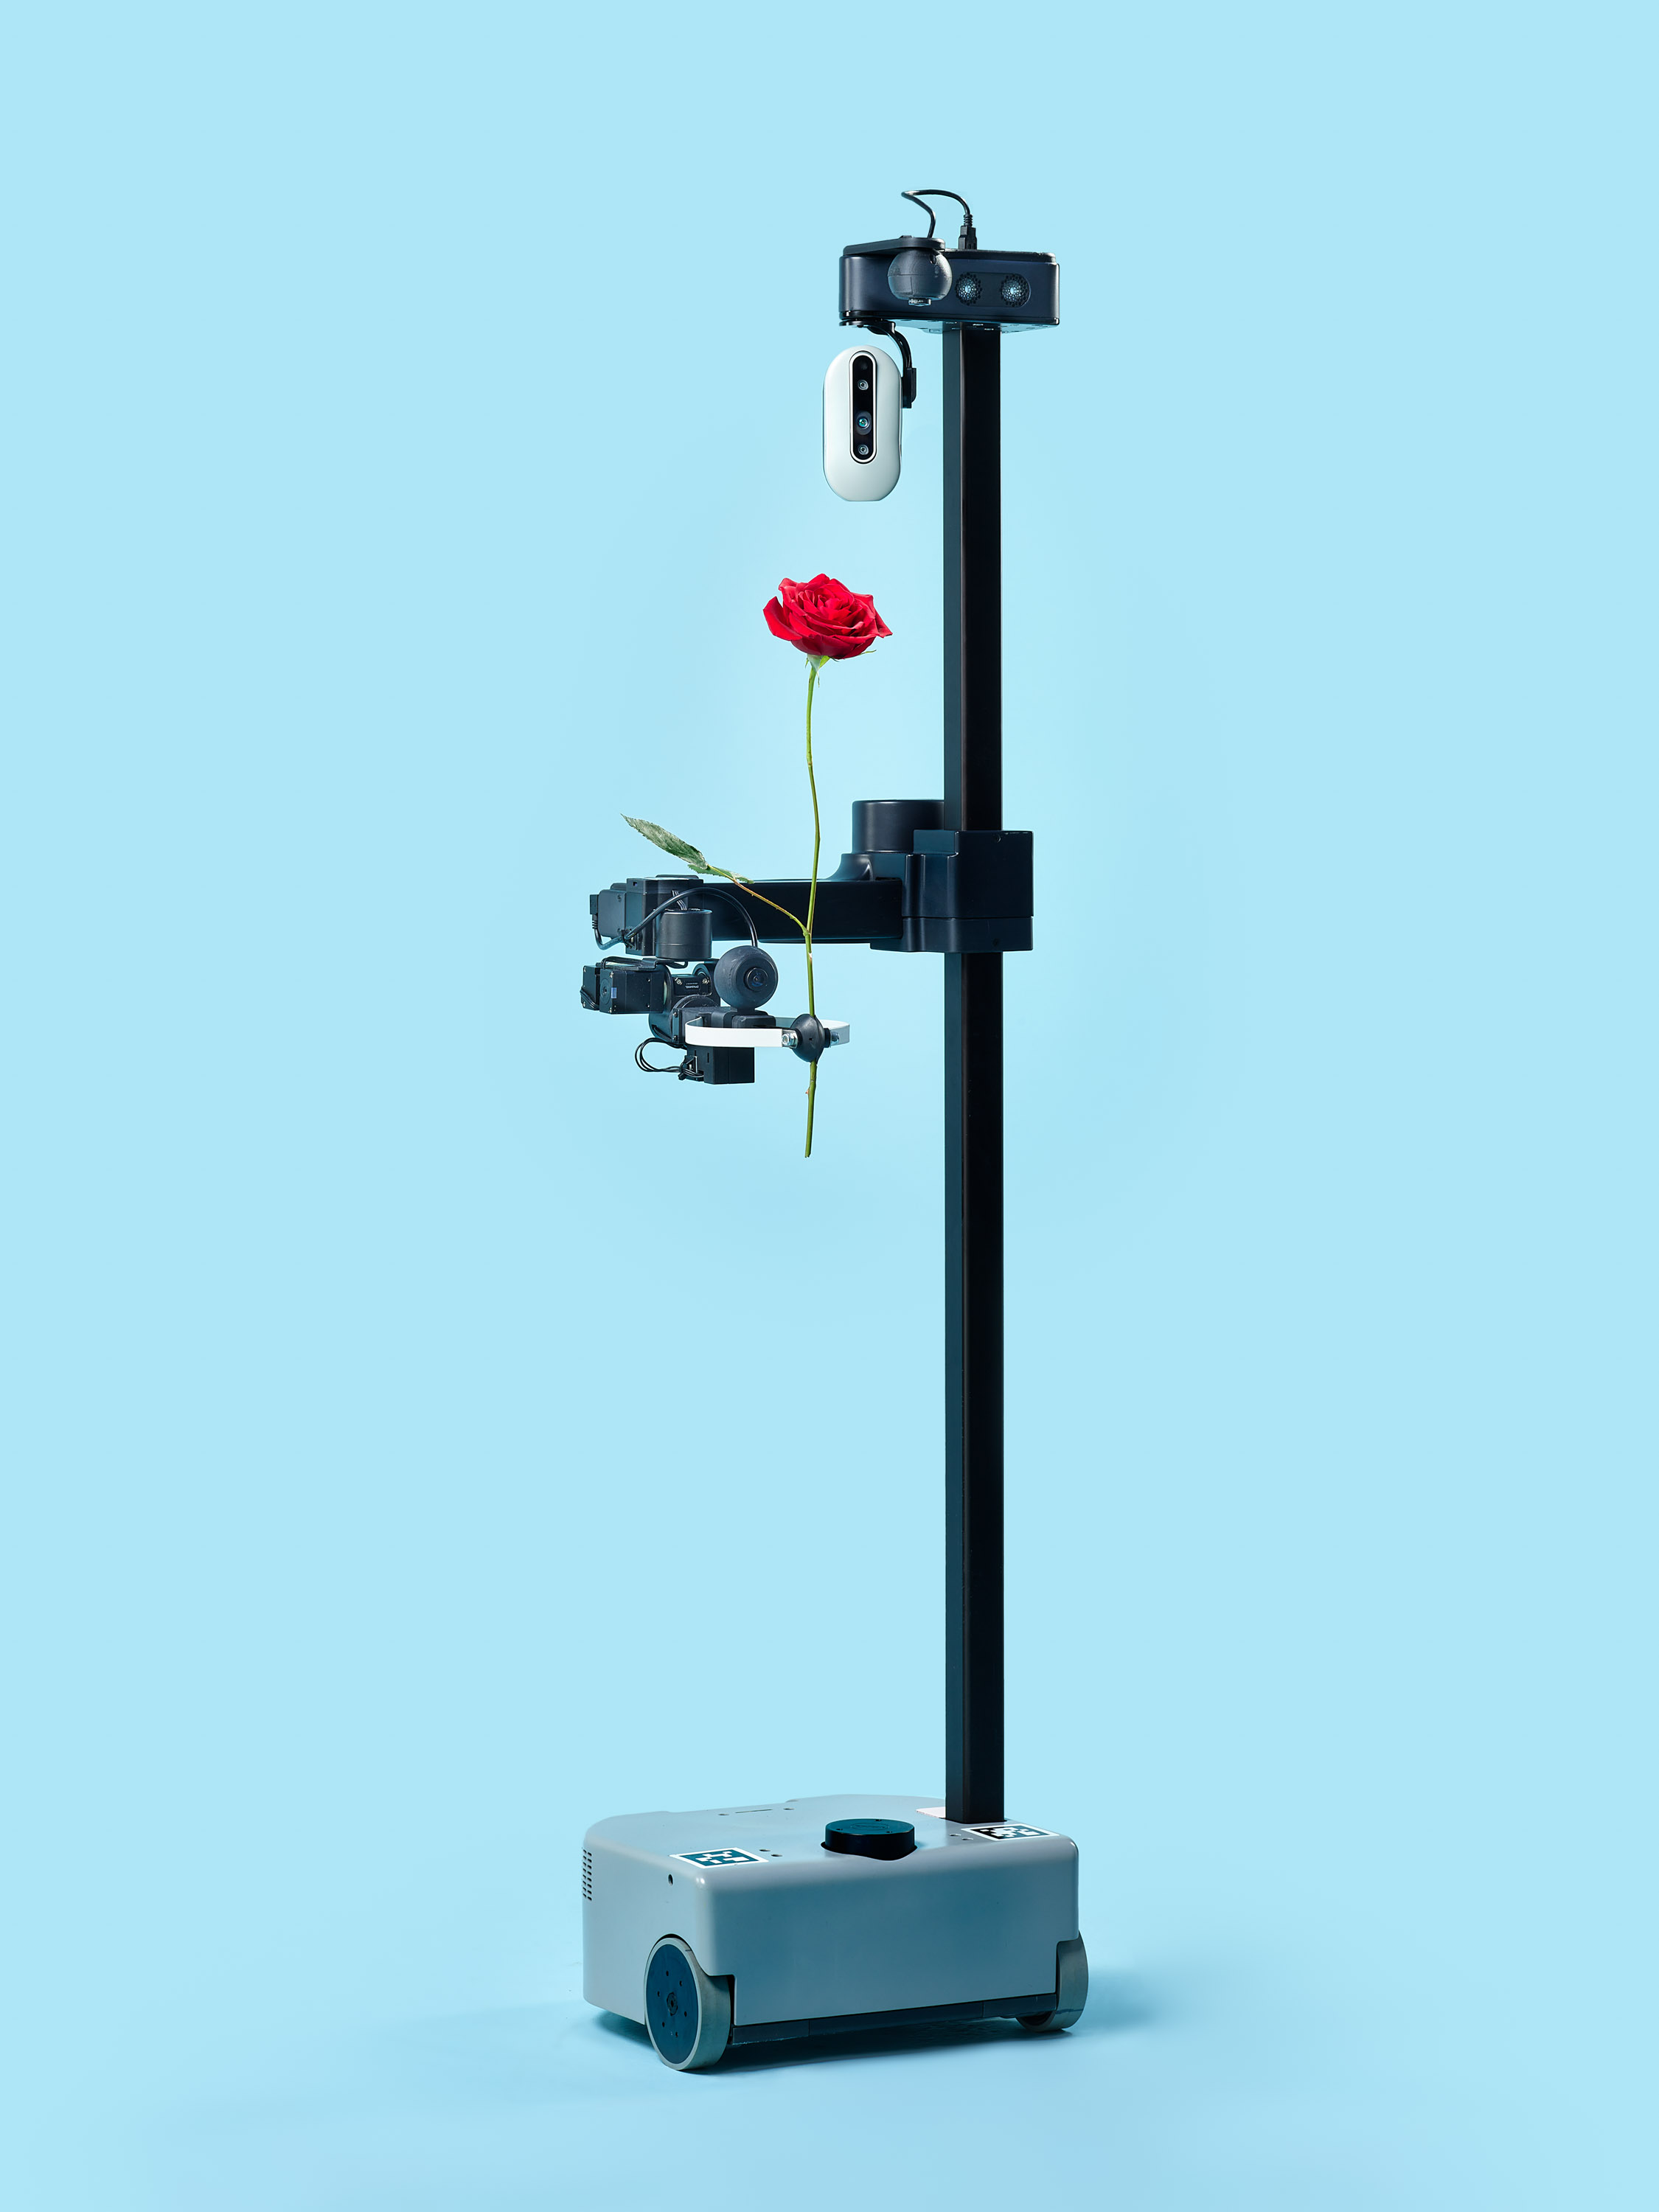 伸展机器人在其抓握器中呈现玫瑰